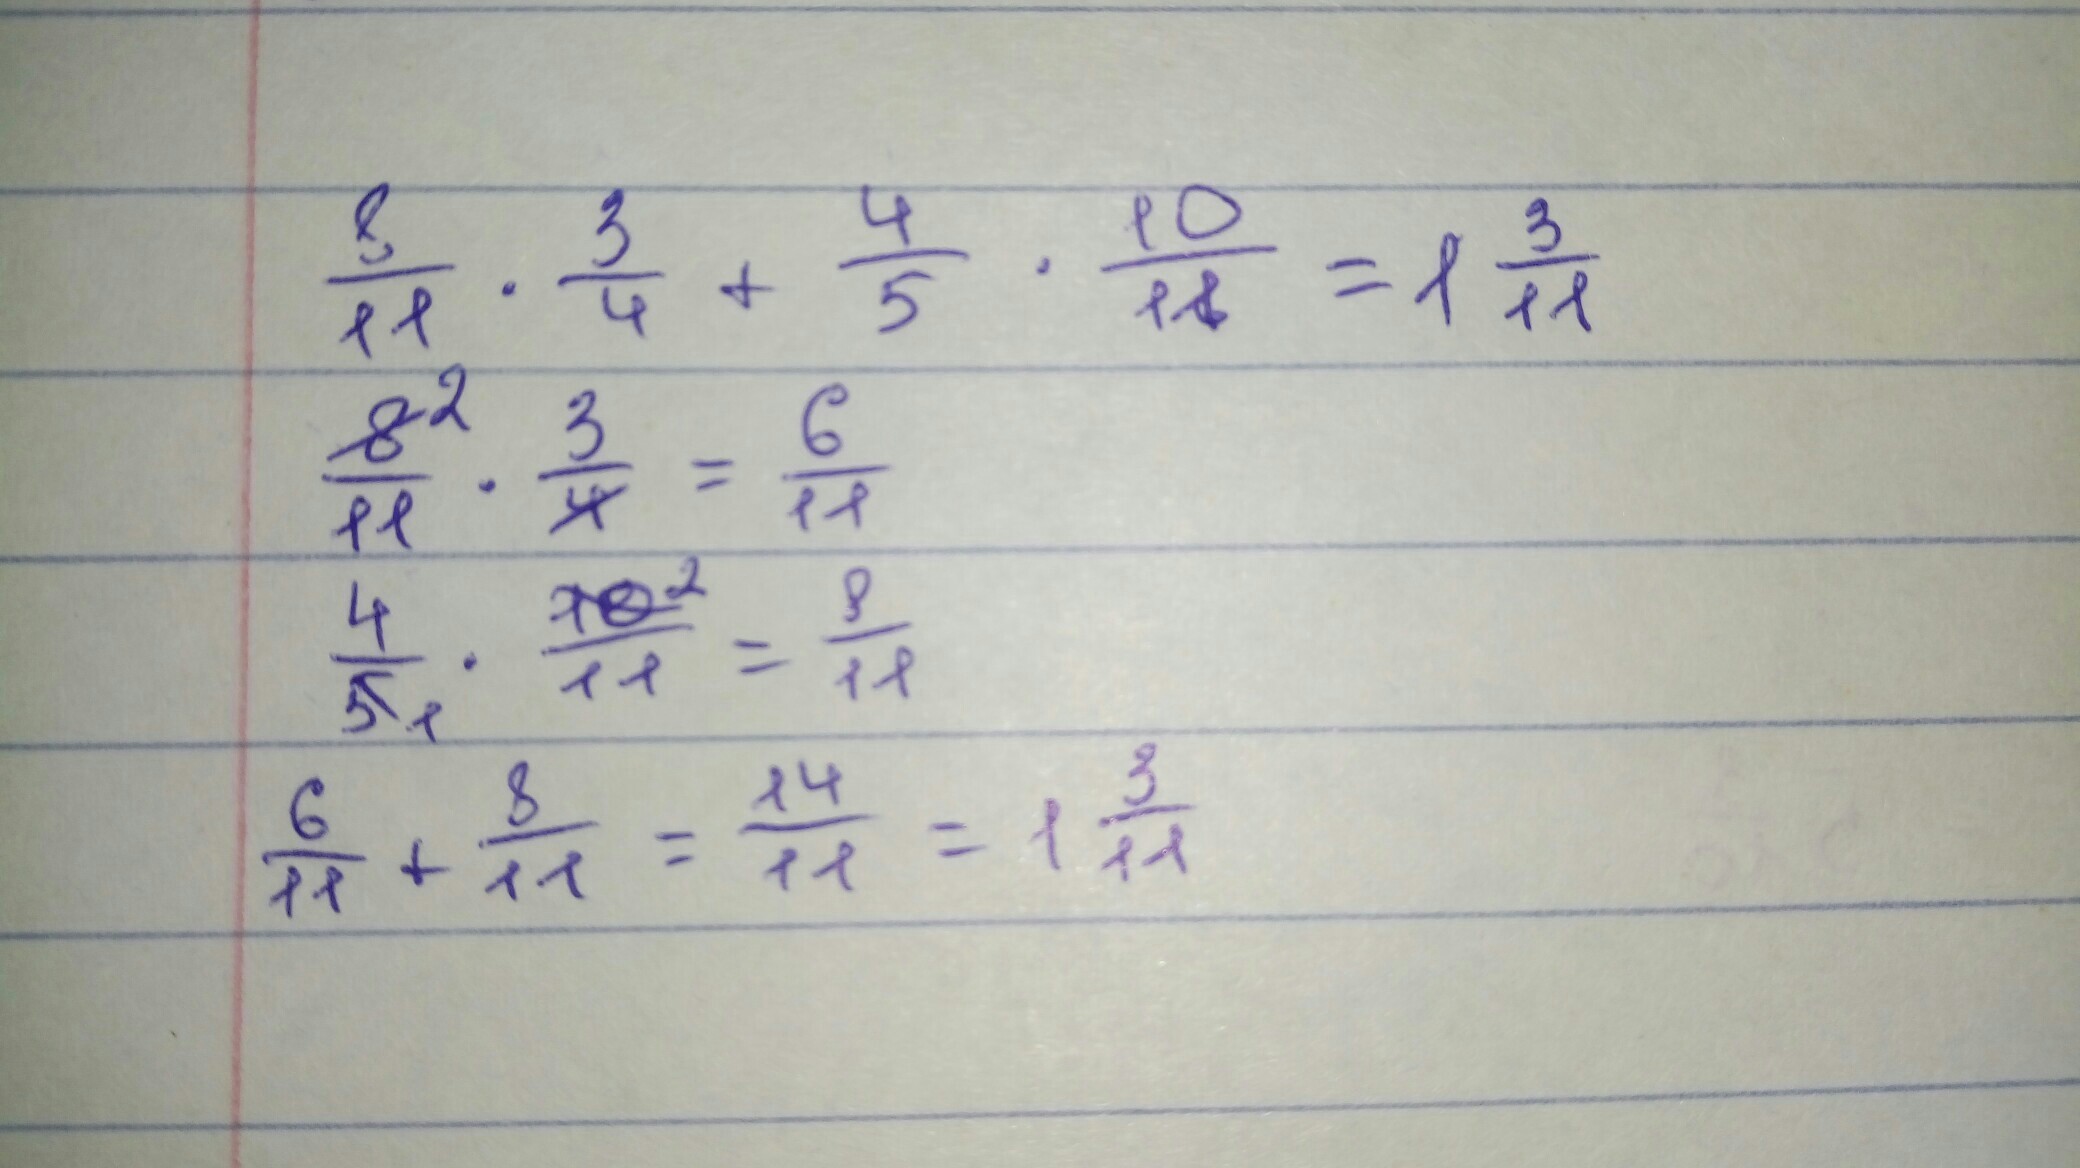 Выразите 7 12. Найдите значение числового выражения 10-4 4/5. Найдите значение числового выражения удобным способом 8/11*3/4+4/5*10/11. Найдите значимое числовое выражение 7/12*6/11+1/8:11/6. Найдите значение числового выражения: 1. (4^3*3^10)/6^10 =.